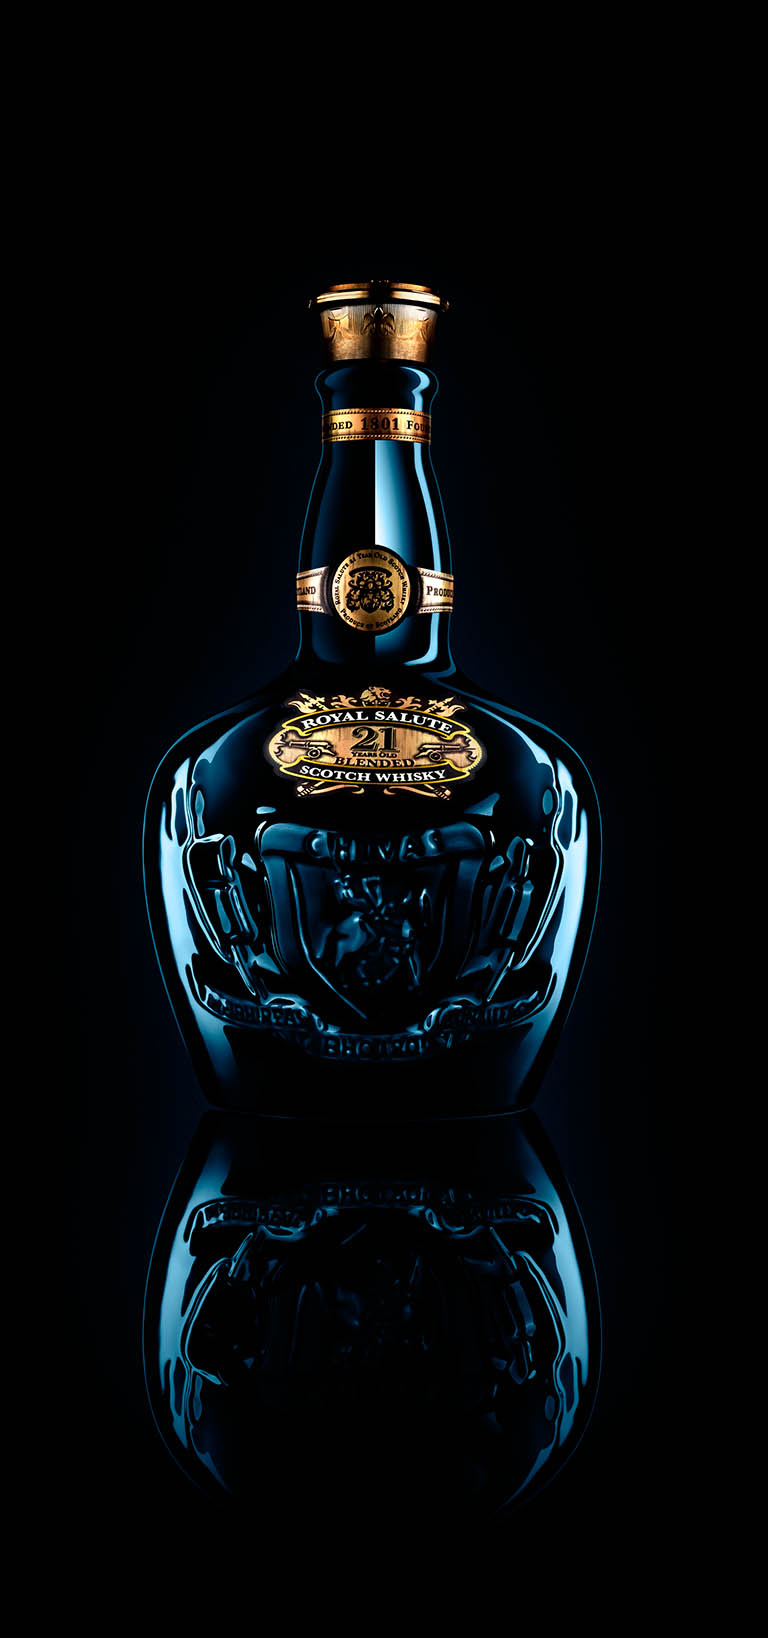 Packshot Factory - Whisky - Chivas Royal Salute whisky bottle